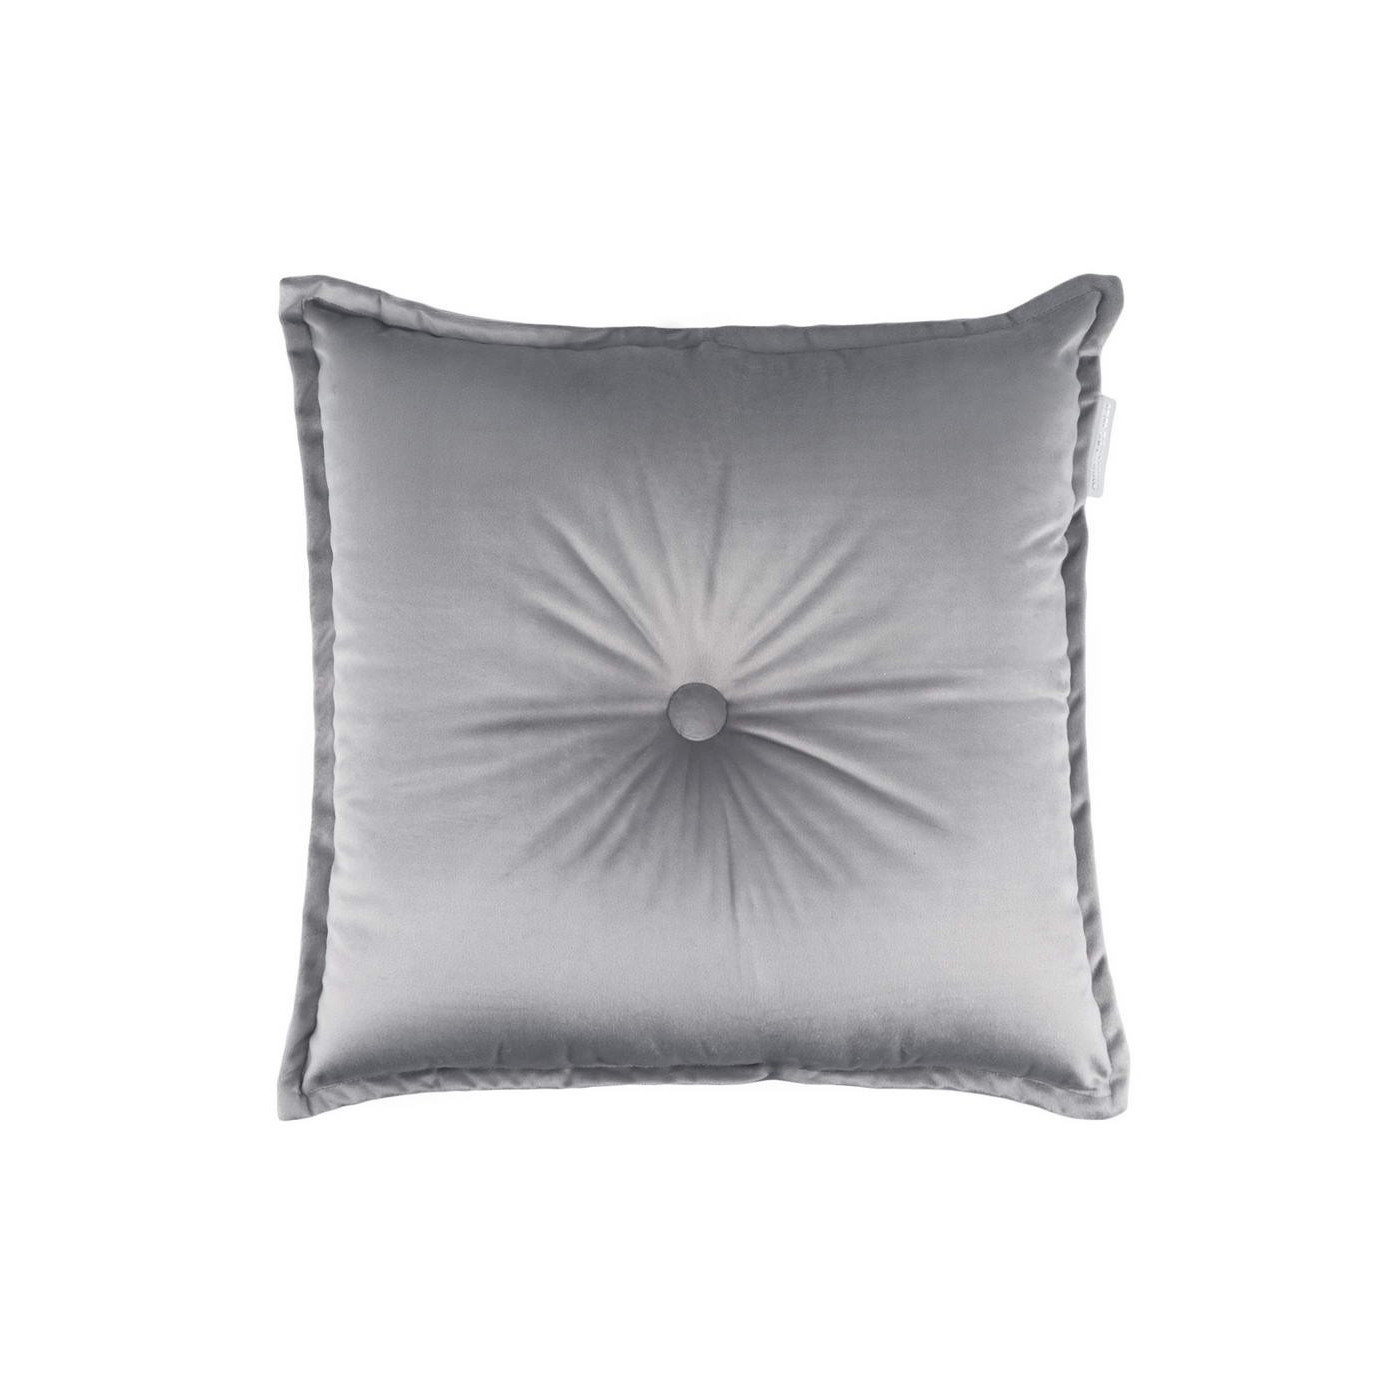 Декоративная подушка Daniele цвет: светло-серый (45х45), размер 45х45 sofi946479 Декоративная подушка Daniele цвет: светло-серый (45х45) - фото 1